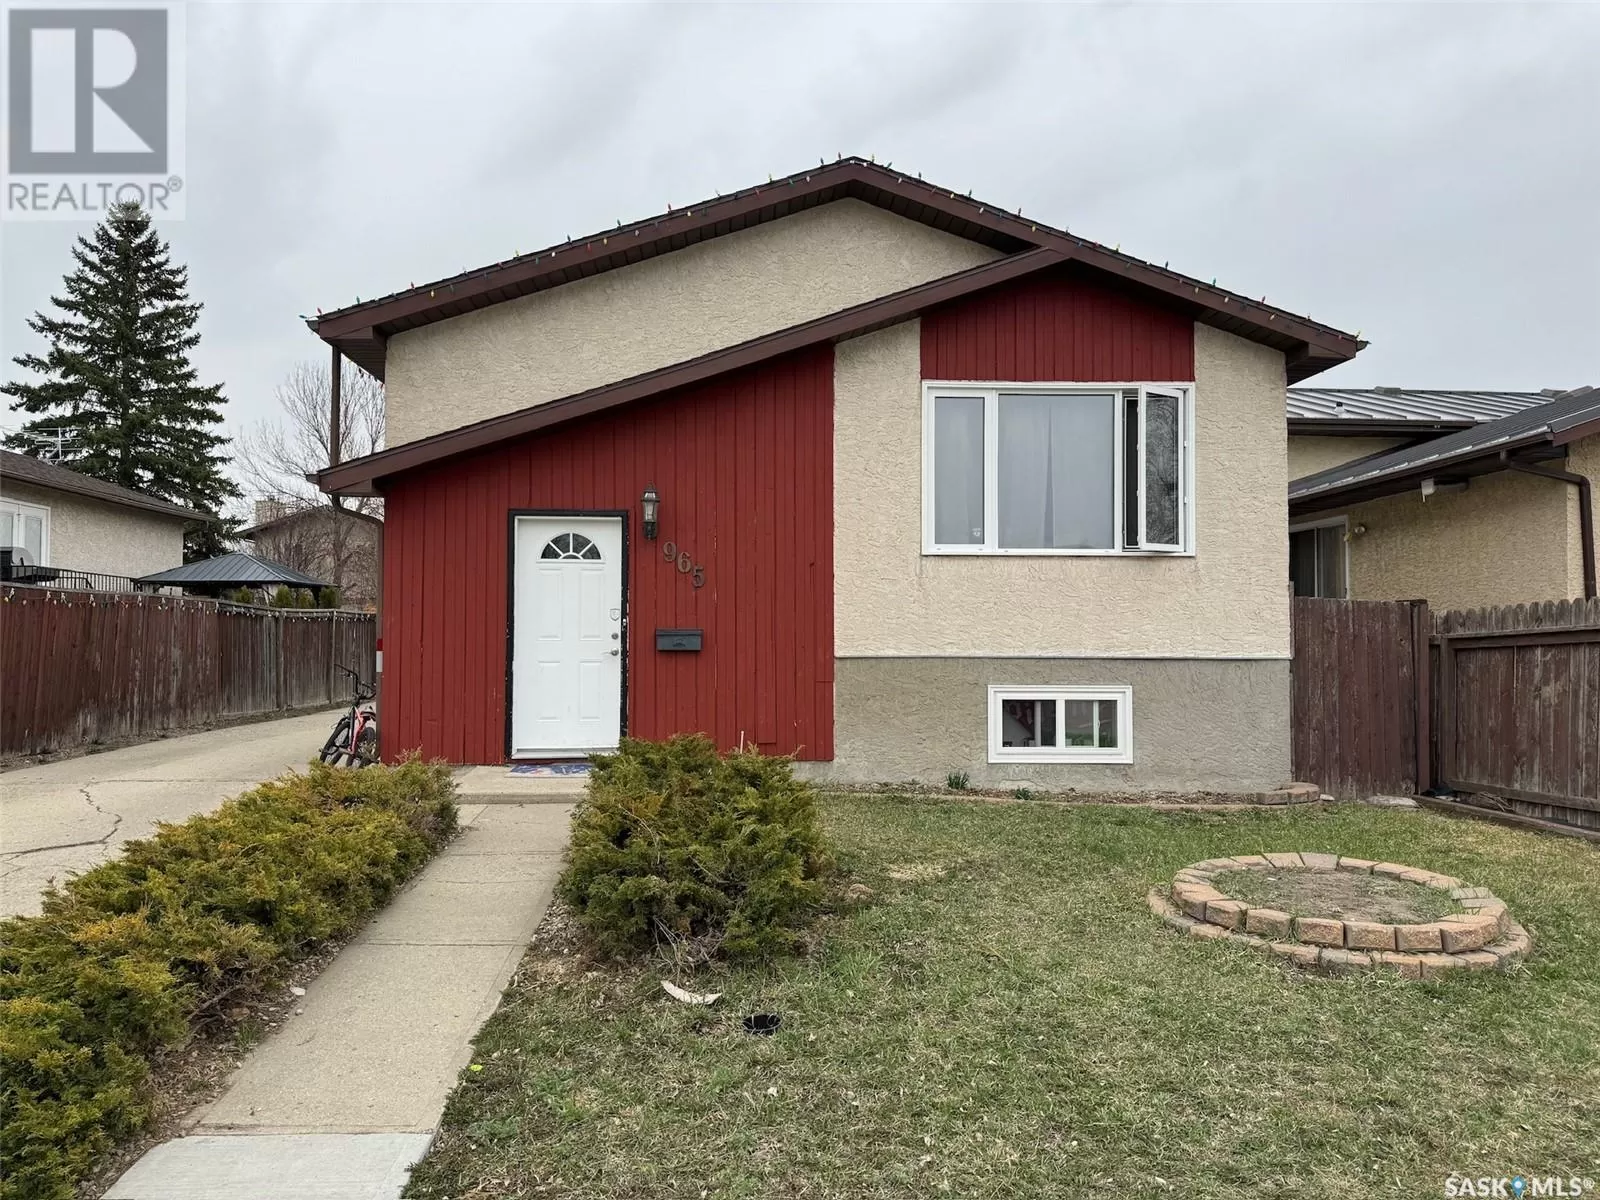 House for rent: 965 Dutkowski Crescent, Regina, Saskatchewan S4N 6X8